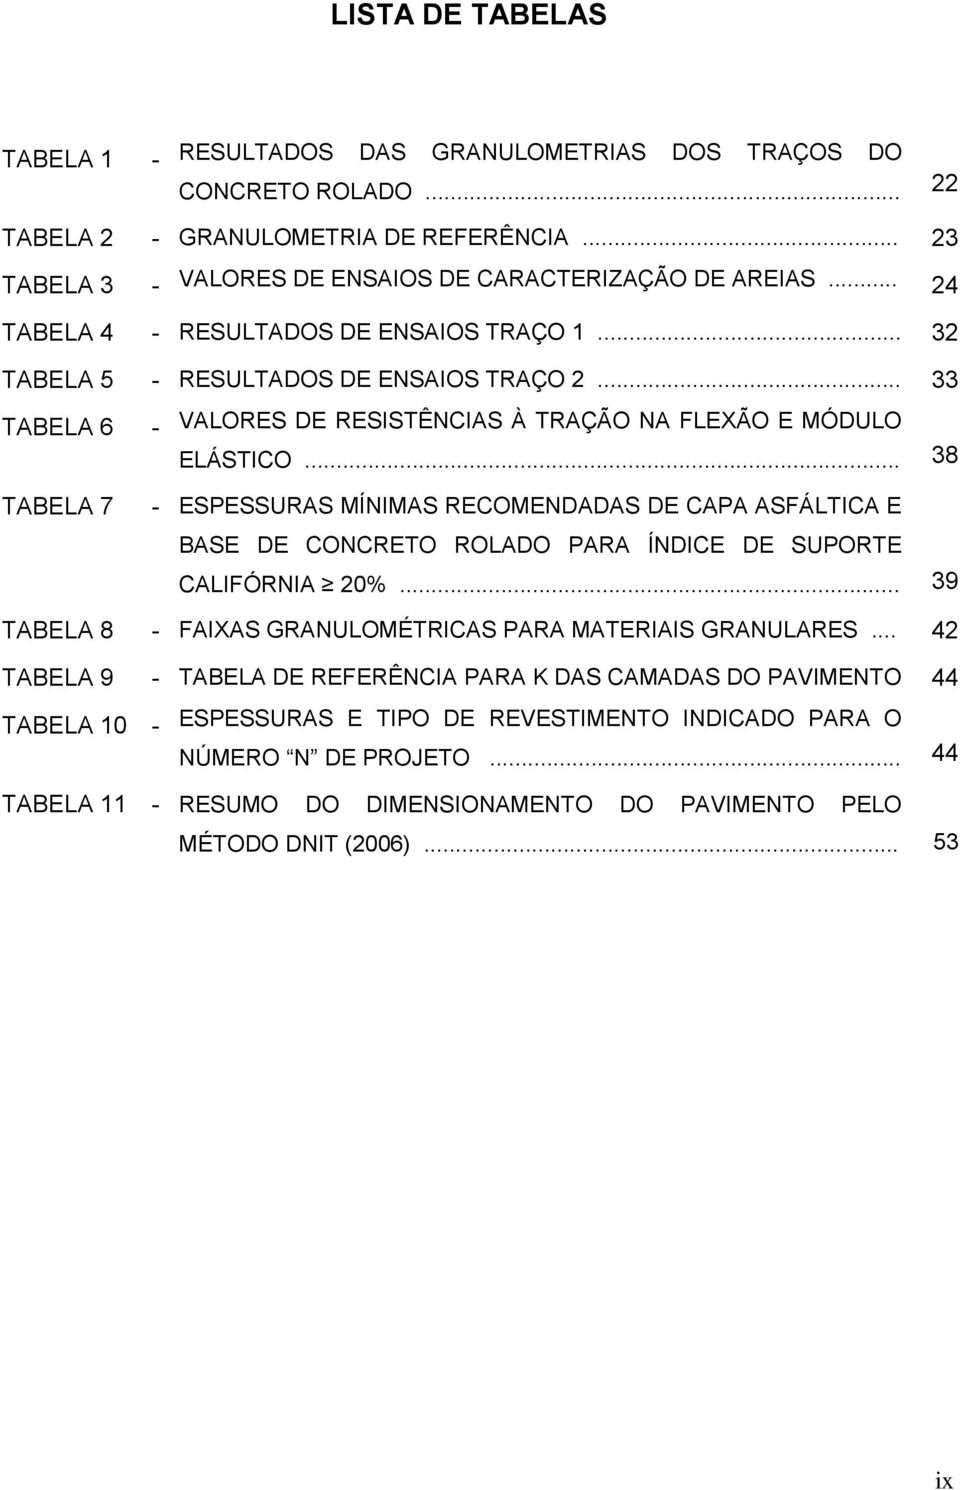 .. 38 TABELA 7 - ESPESSURAS MÍNIMAS RECOMENDADAS DE CAPA ASFÁLTICA E BASE DE CONCRETO ROLADO PARA ÍNDICE DE SUPORTE CALIFÓRNIA 20%... 39 TABELA 8 - FAIXAS GRANULOMÉTRICAS PARA MATERIAIS GRANULARES.